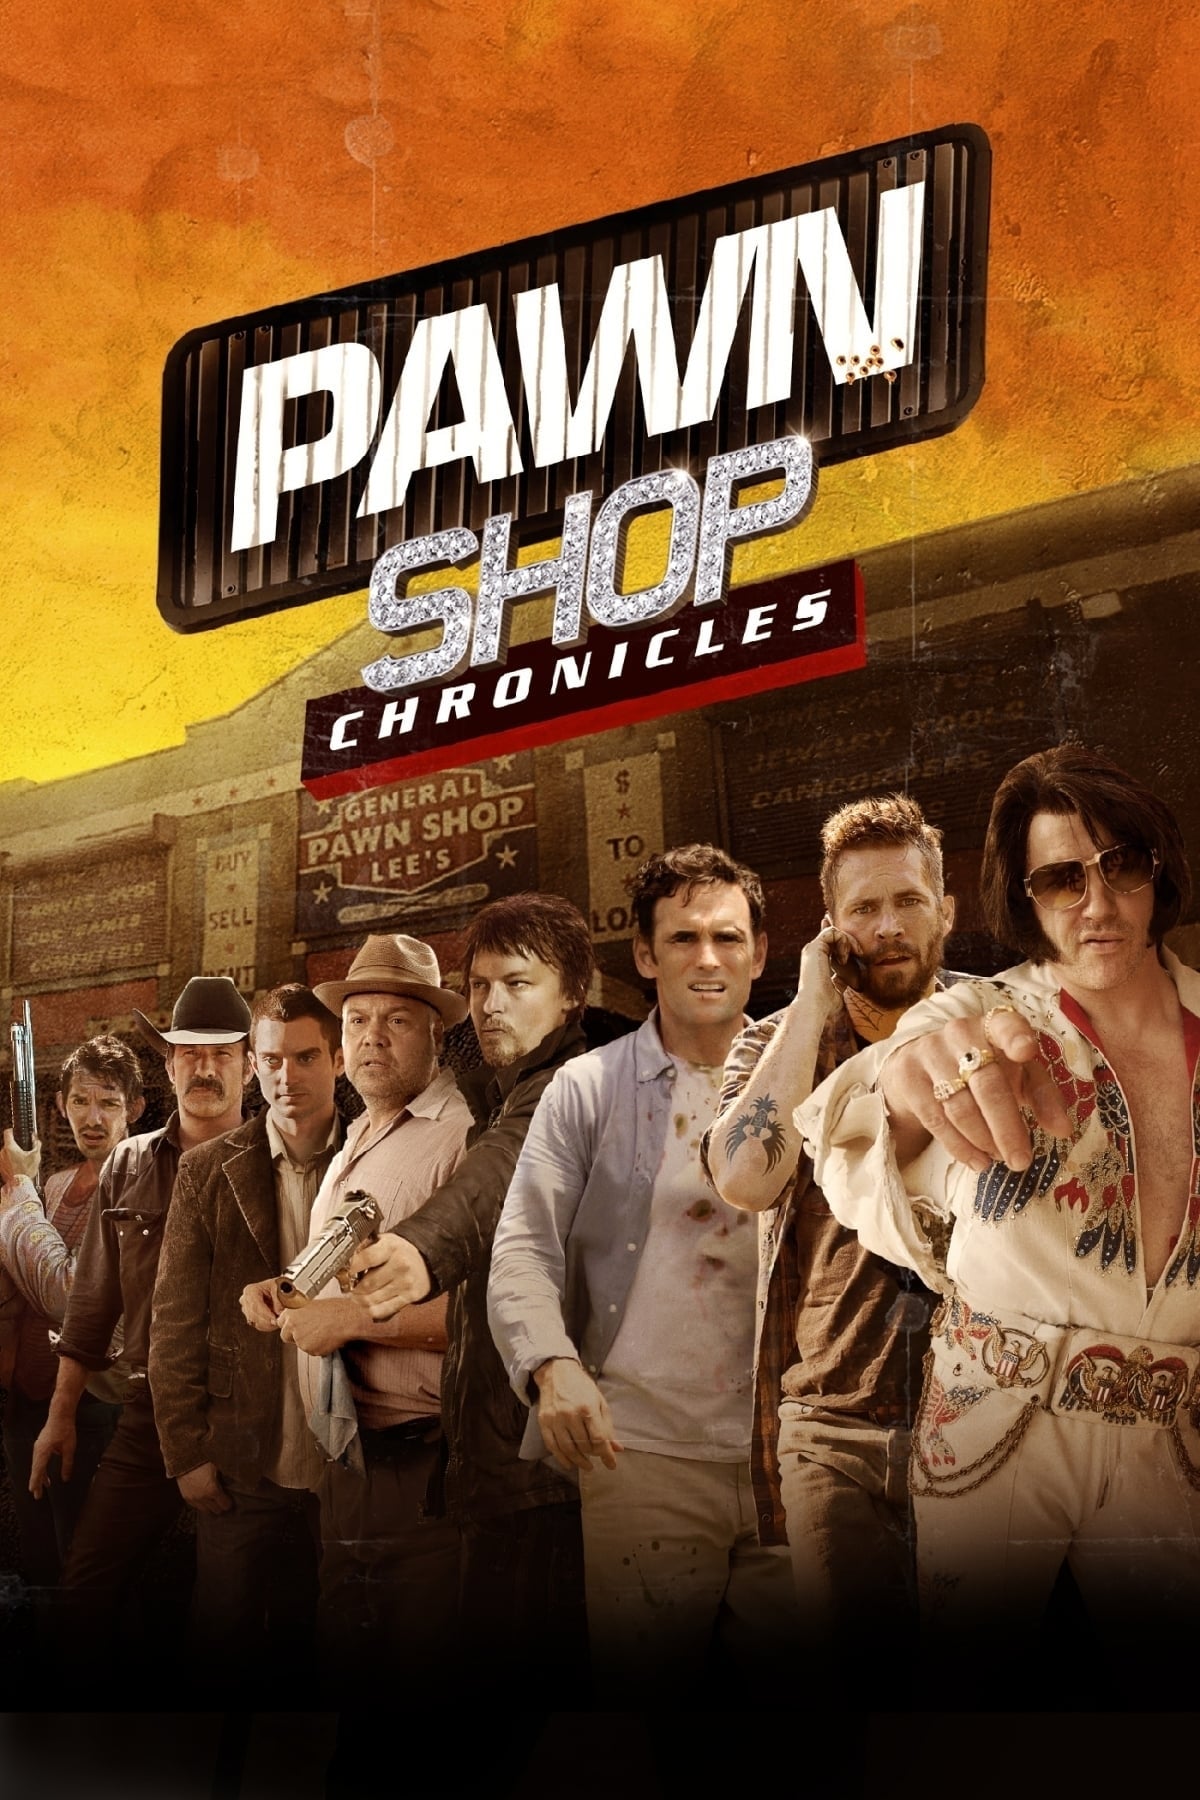 ماجراهای دکه سمساری (Pawn Shop Chronicles)